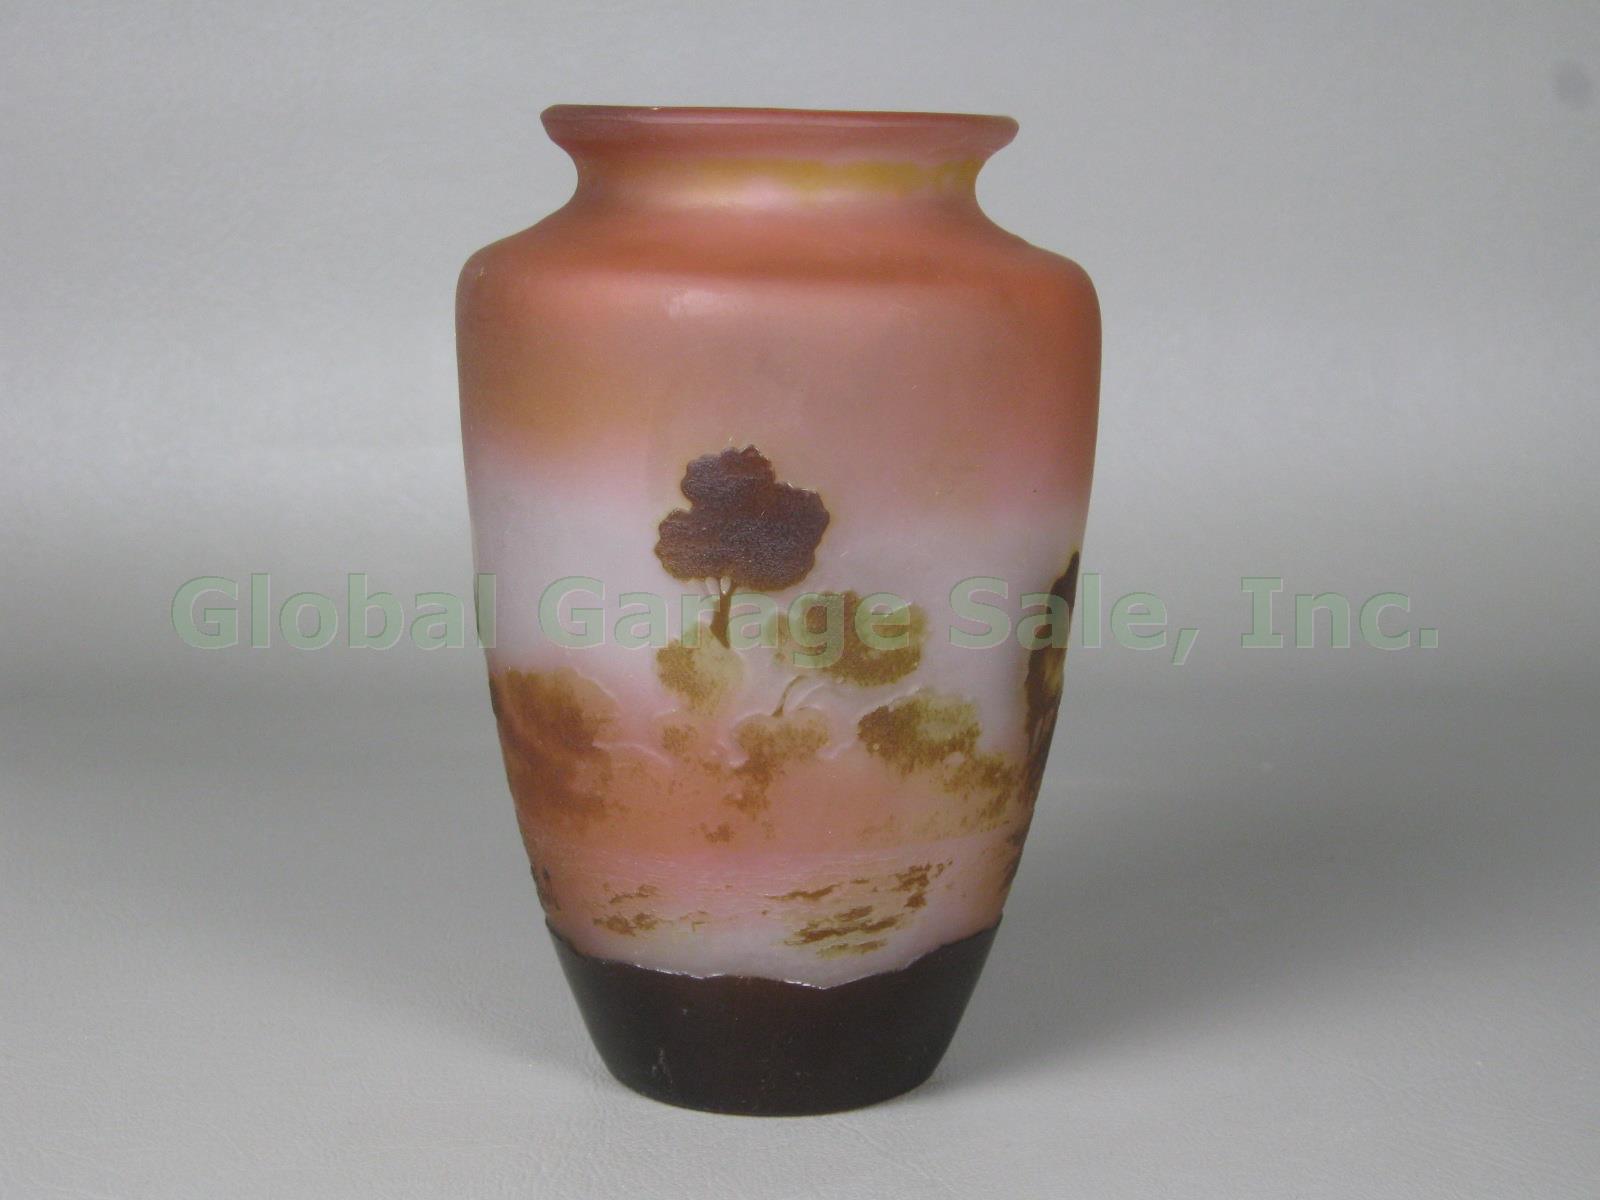 Gorgeous Antique Emile Galle Signed Art Glass Cameo Landscape Vase Art Nouveau 3